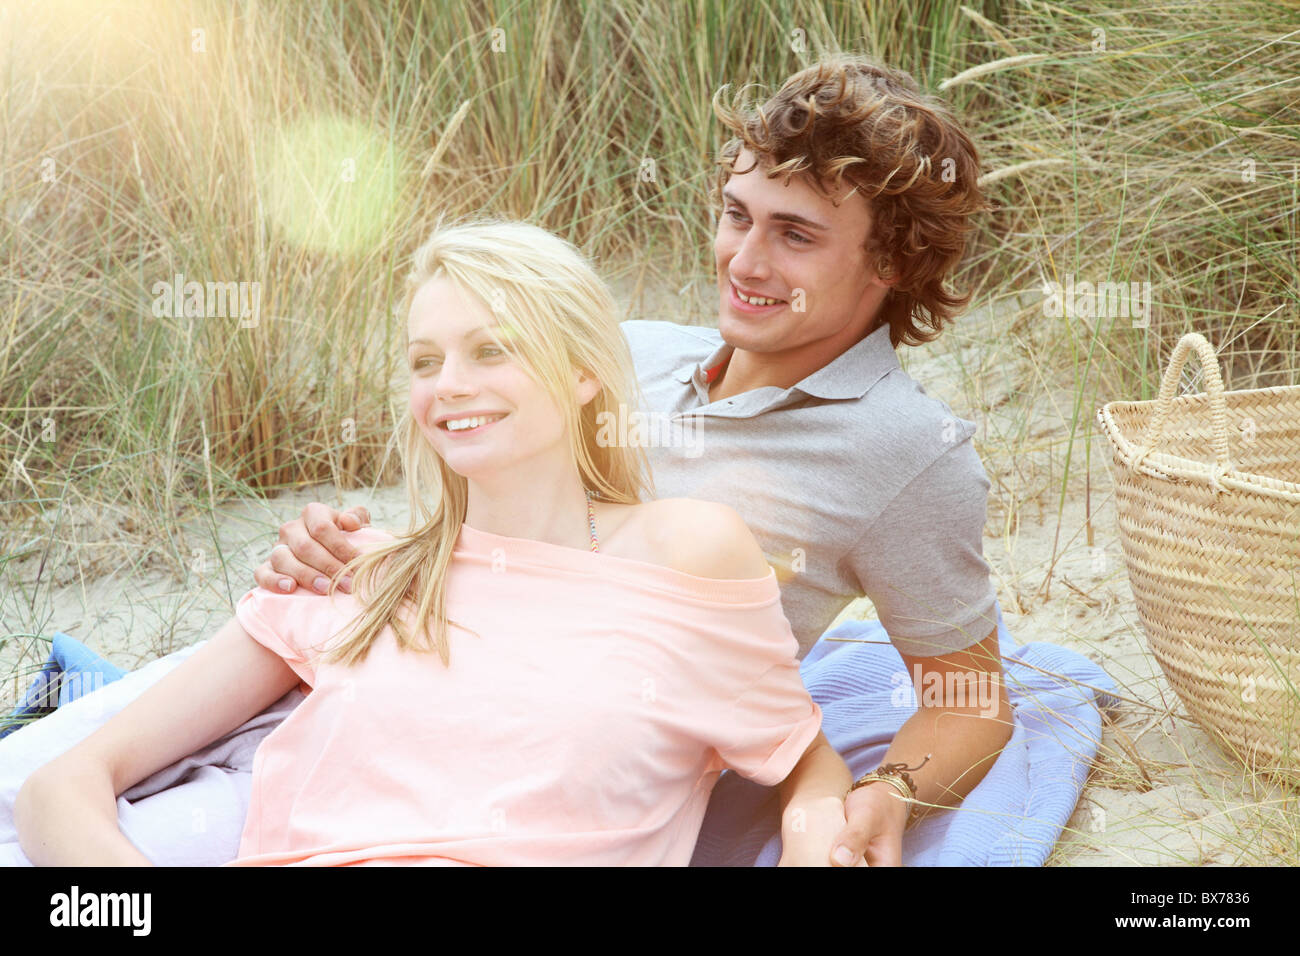 Una coppia avente un romantico picnic sulla spiaggia Foto Stock